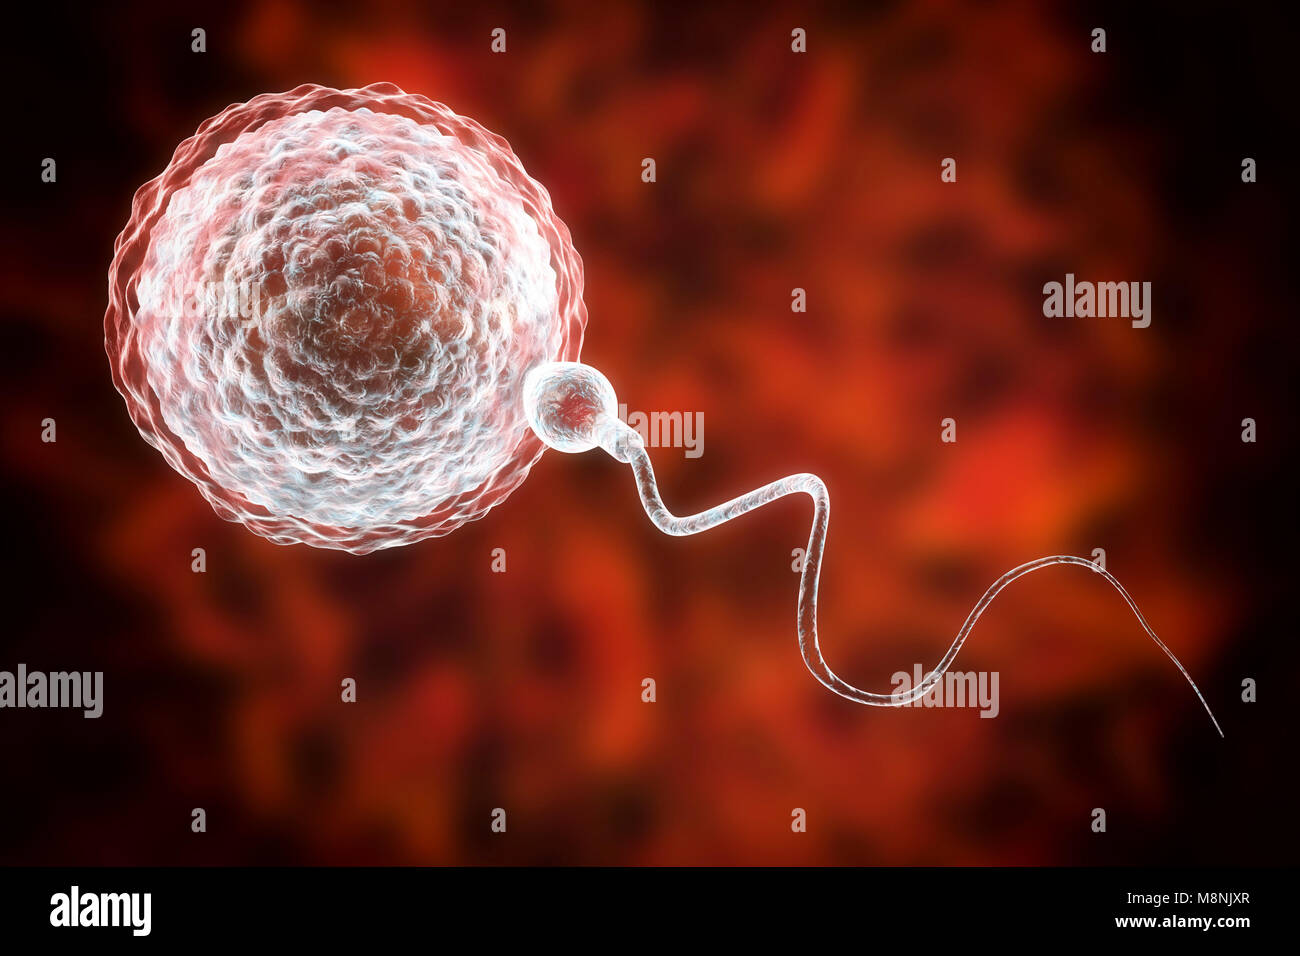 Spermien befruchtete Ei, computer Abbildung. Die Samenzellen hat einen ovalen Kopf und ein Haar - wie Schwanz, es schlägt mit einem schleudertrauma Bewegung zu schwimmen. Die menschliche Frau produziert in der Regel ein einziges großes Ei aus dem Eierstock, während der männliche rund 300 Millionen viel kleiner Spermien Releases. Die Samenzellen, die Reise durch den Uterus (Gebärmutter) und die Eileiter das Ei zu erreichen. Die spermien müssen durchdringen eine dicke Schicht um das Ei; dieses Eindringen wird mit Hilfe von Enzymen, die in der Kopf des Sperma enthalten. Nur einer kann das Sperma Sicherung mit dem Ei Kern. Düngung mit männlichen und weiblichen genetischen Material geteilt werden. Stockfoto